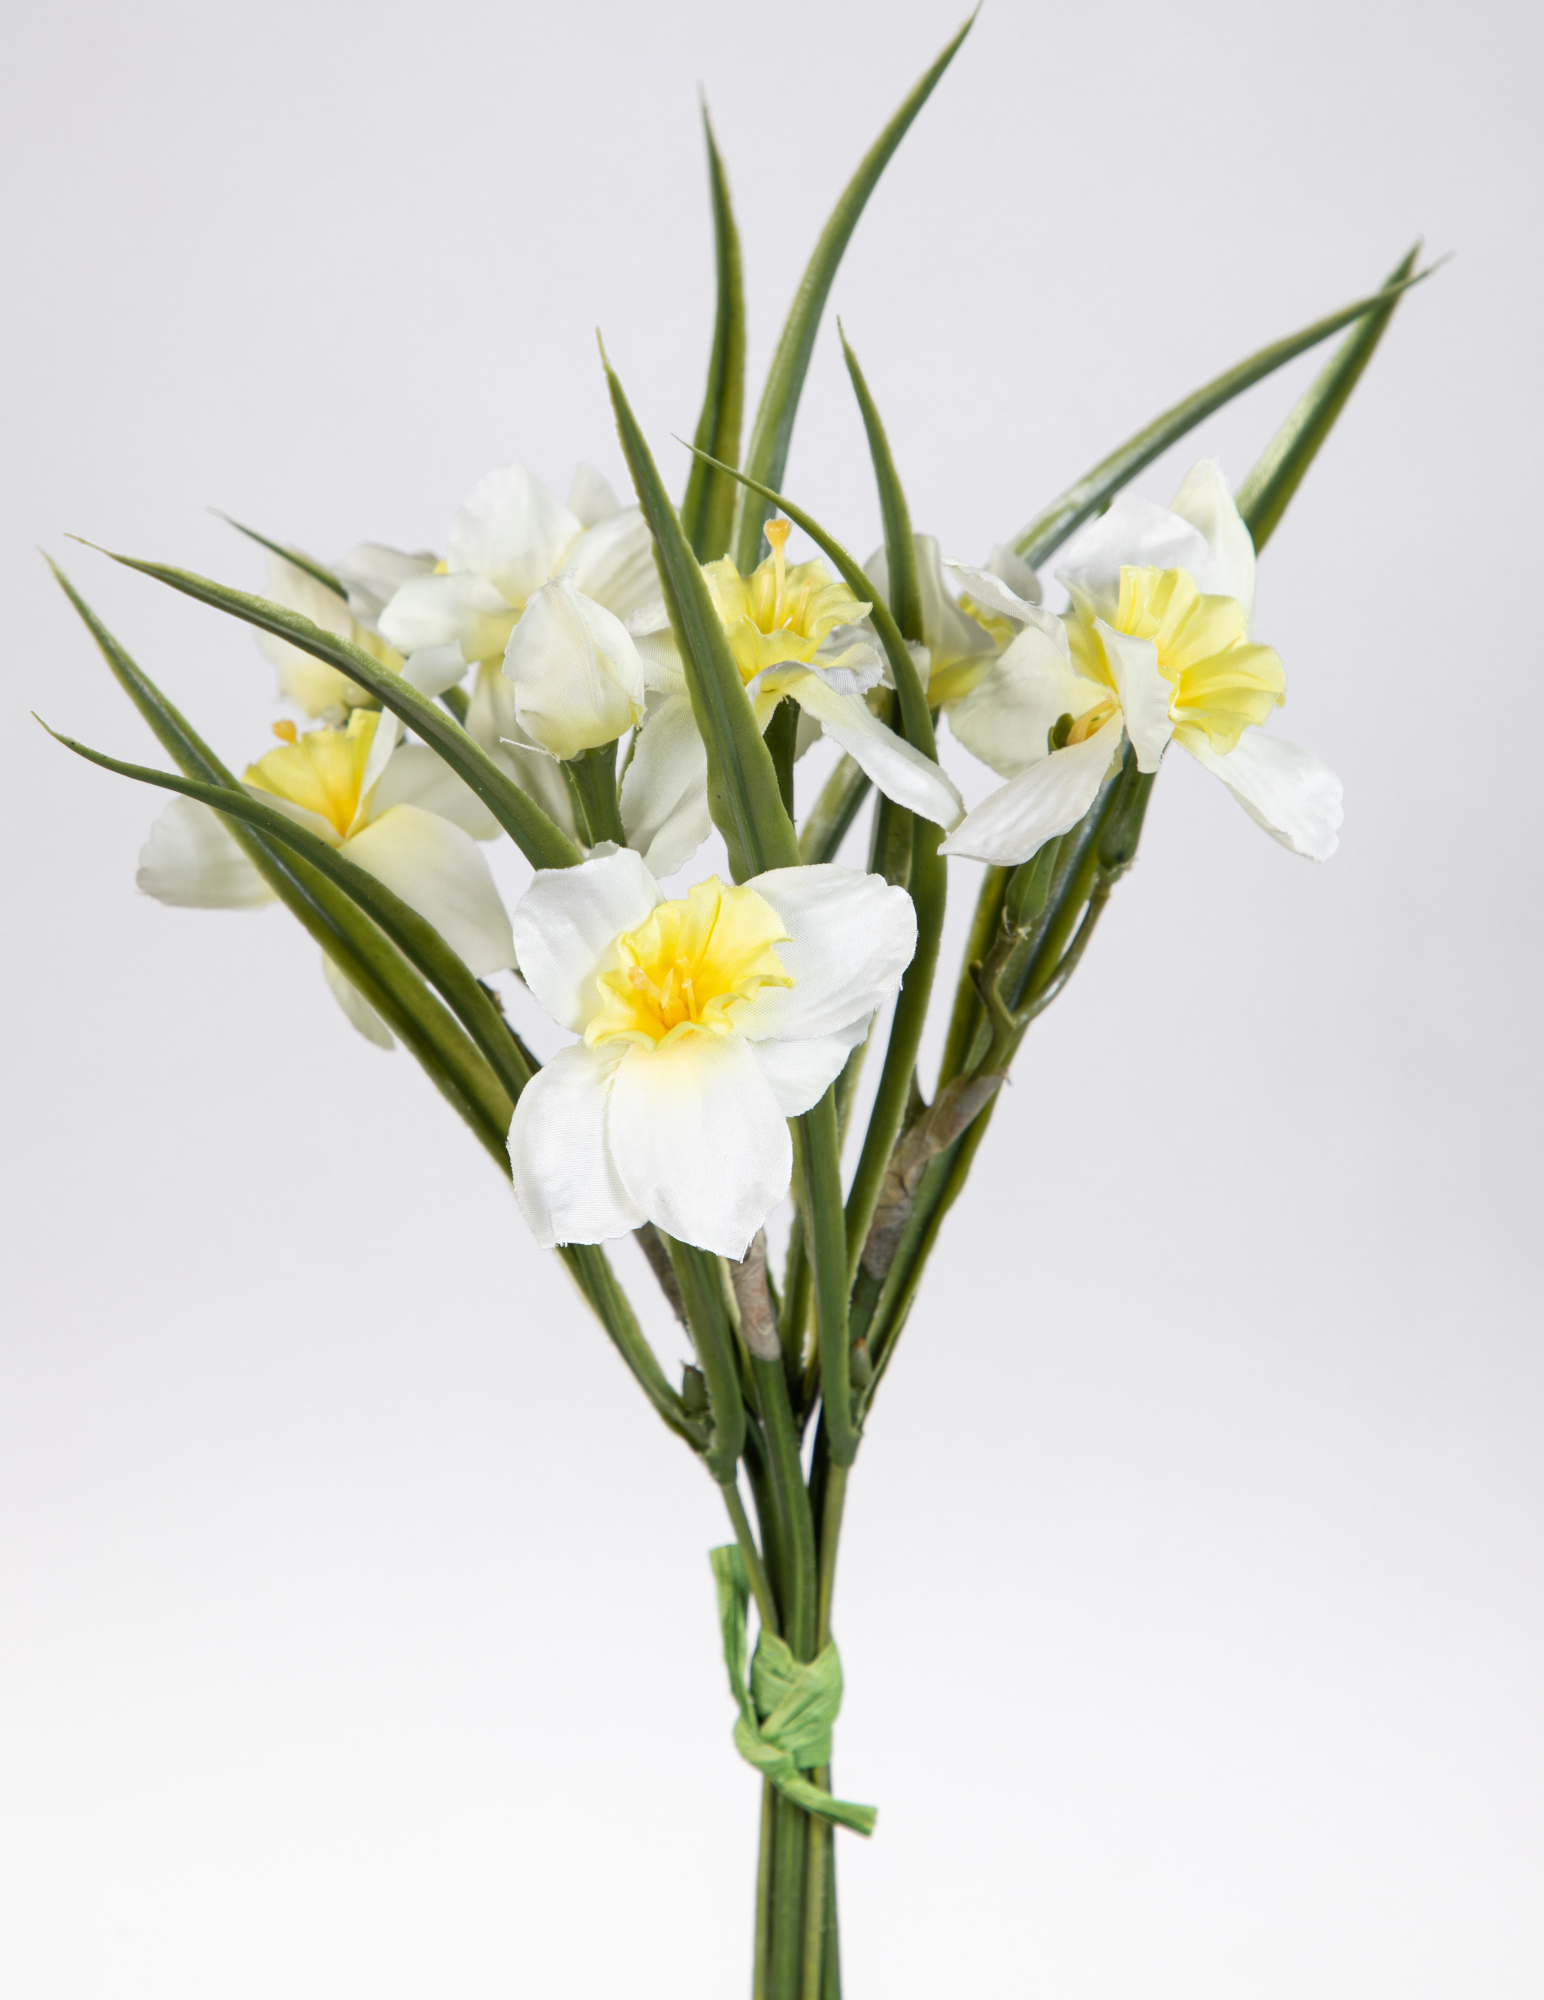 Narzissenbund mit Gras 36cm Kunstblumen weiß GA Narzissen Osterglocken Blumen künstliche